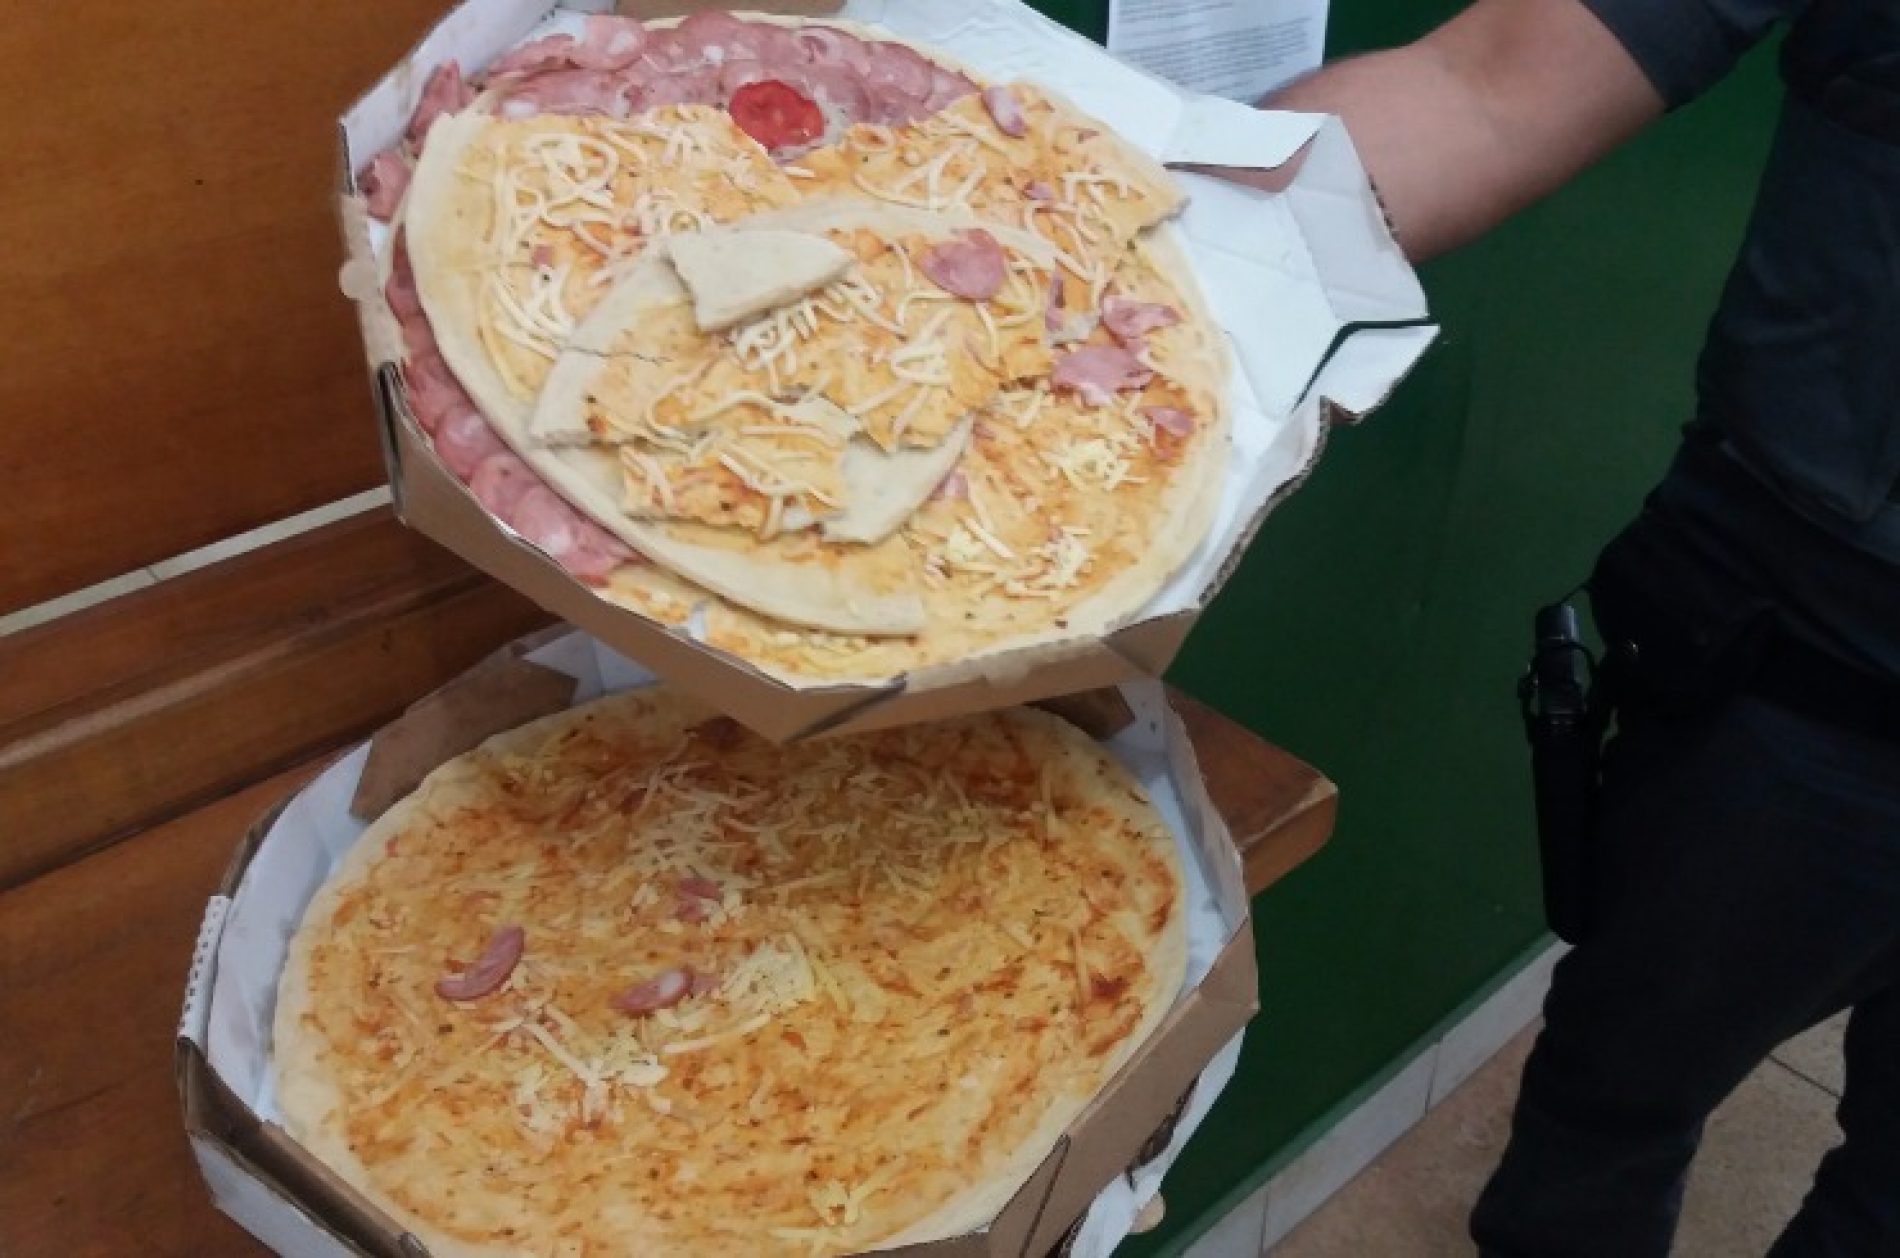 REGIONAL: Preso por furtar pizzas diz: ‘estava com fome’